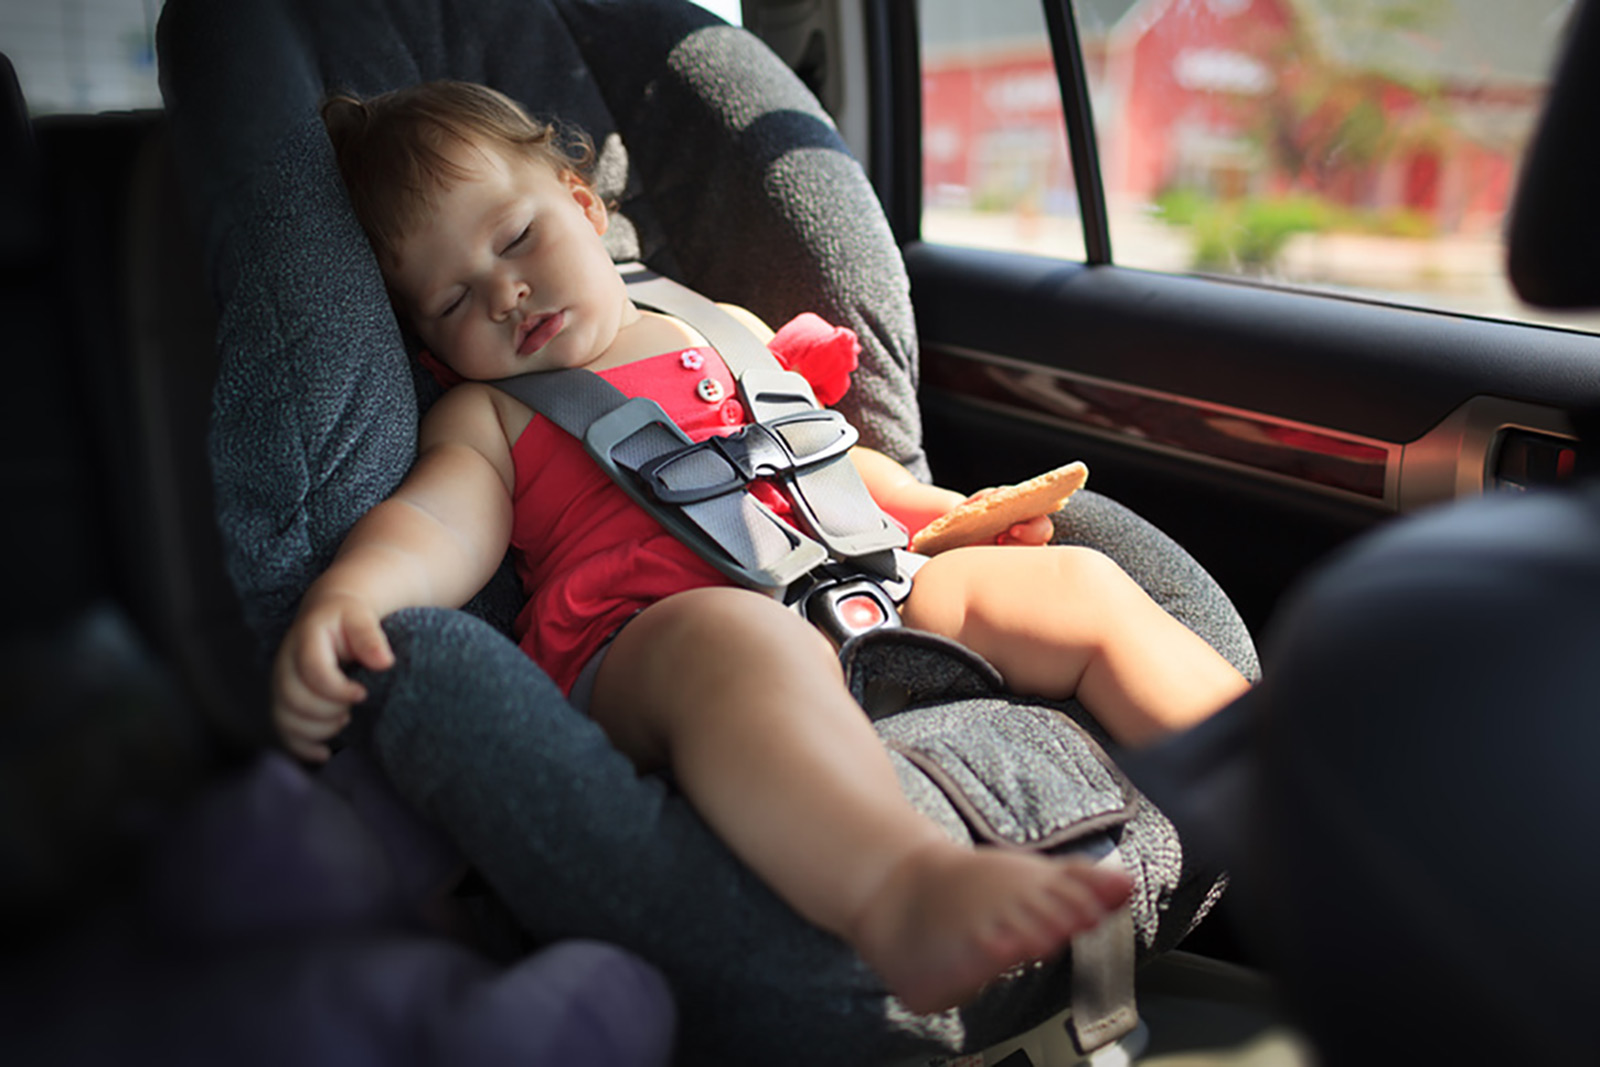 Les sièges auto pour les enfants et les bébés en voiture